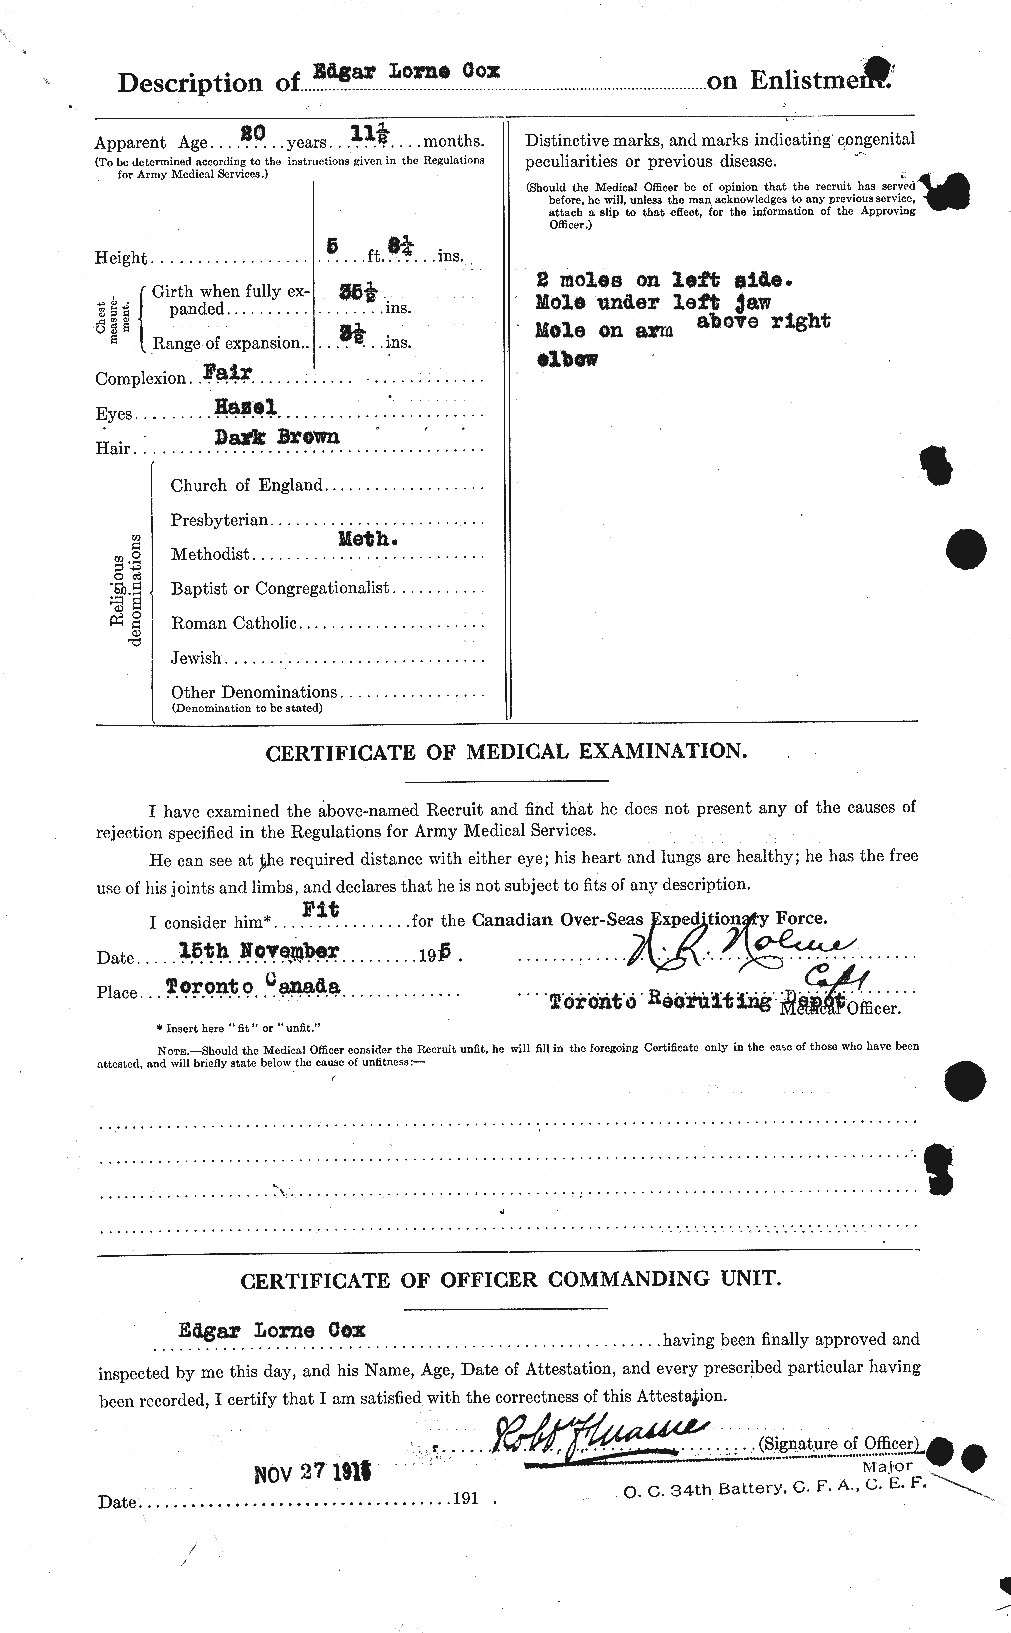 Dossiers du Personnel de la Première Guerre mondiale - CEC 060888b